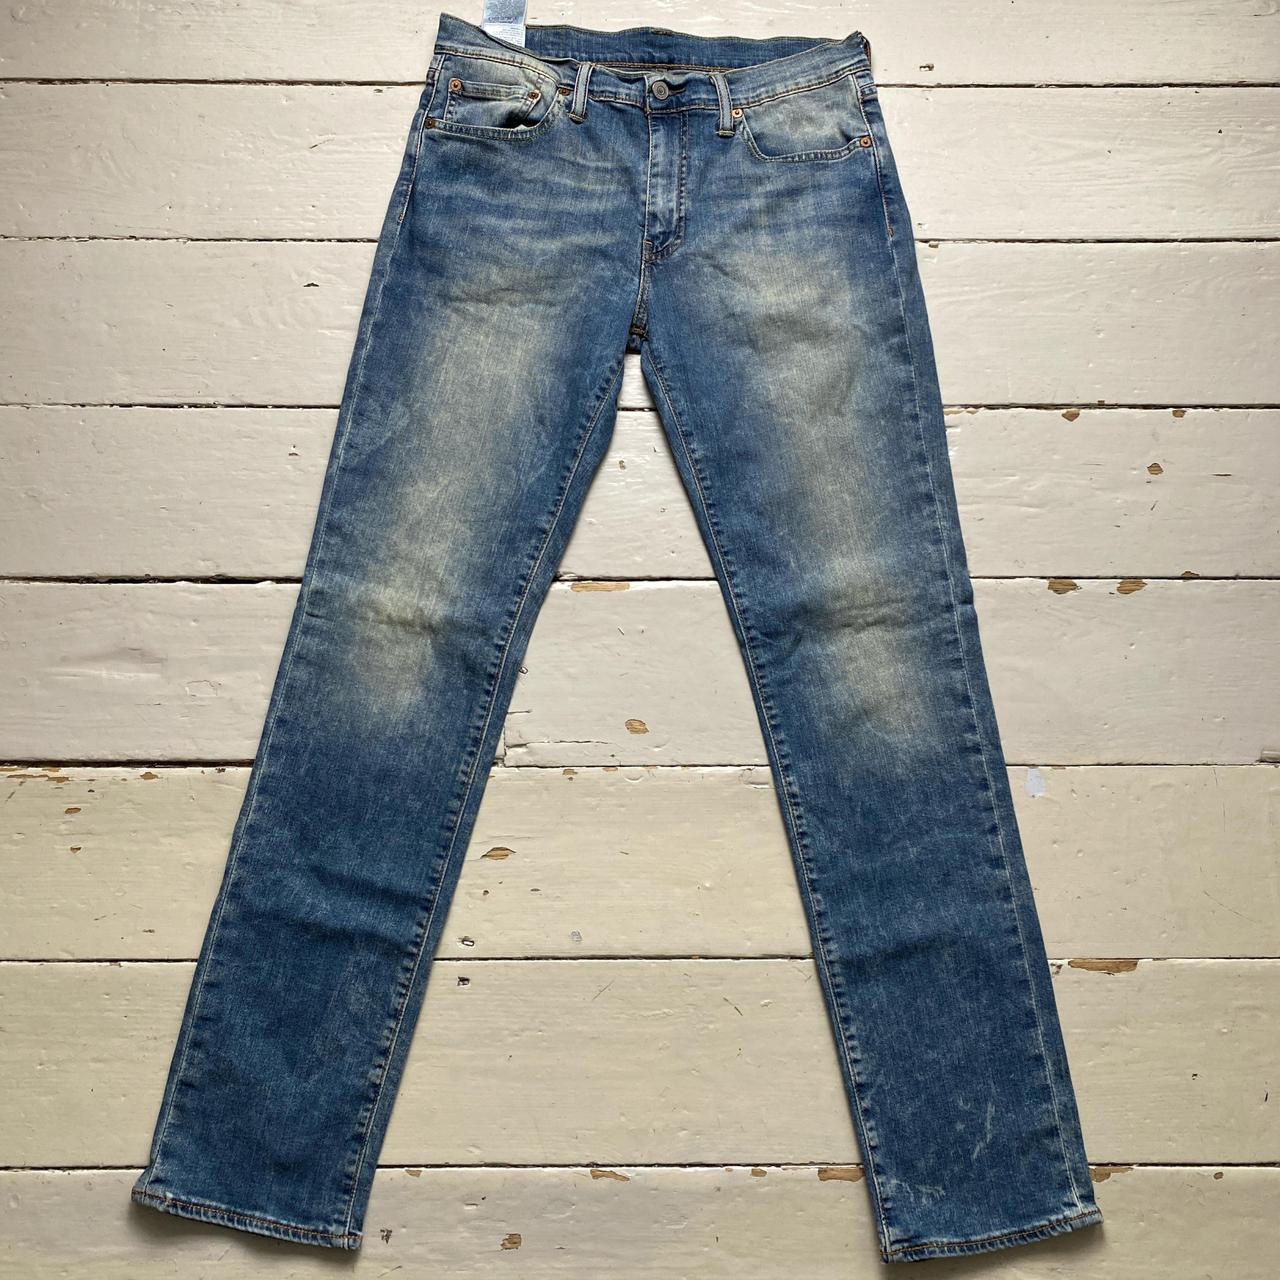 Levis 511 Light Blue Stonewash Jeans